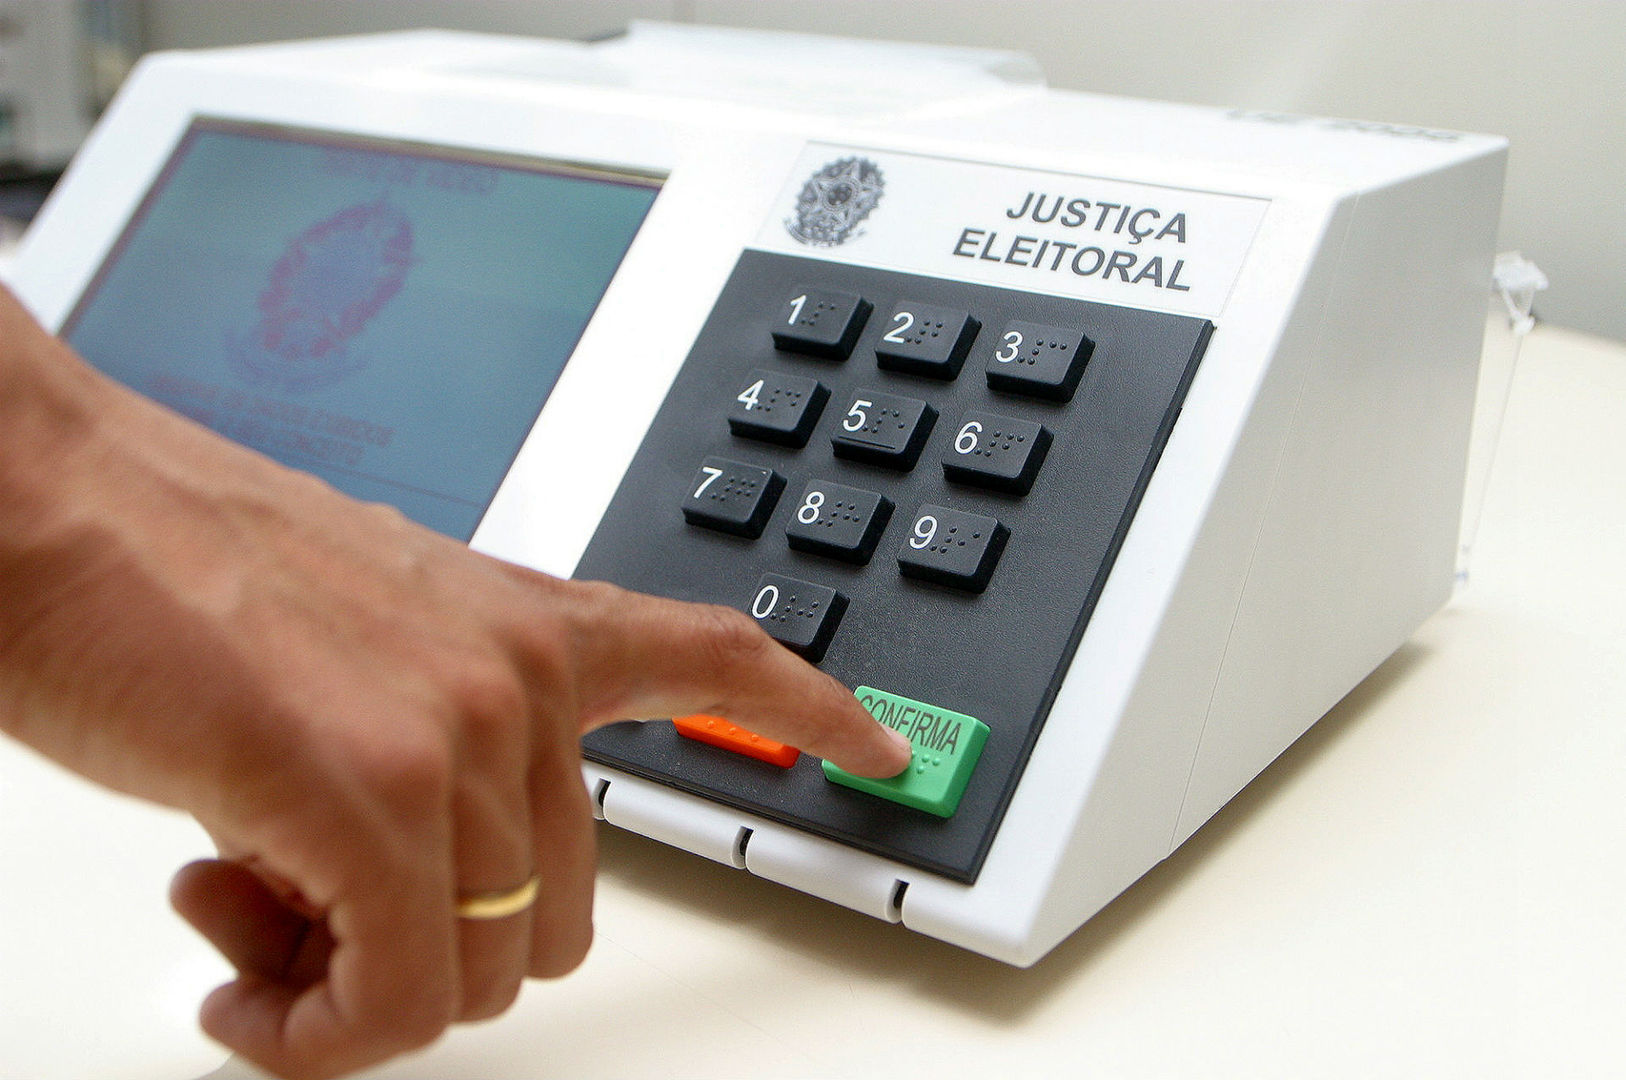 Faltam 19 dias: pioneiro, sistema eletrônico de votação fortalece transparência do processo eleitoral